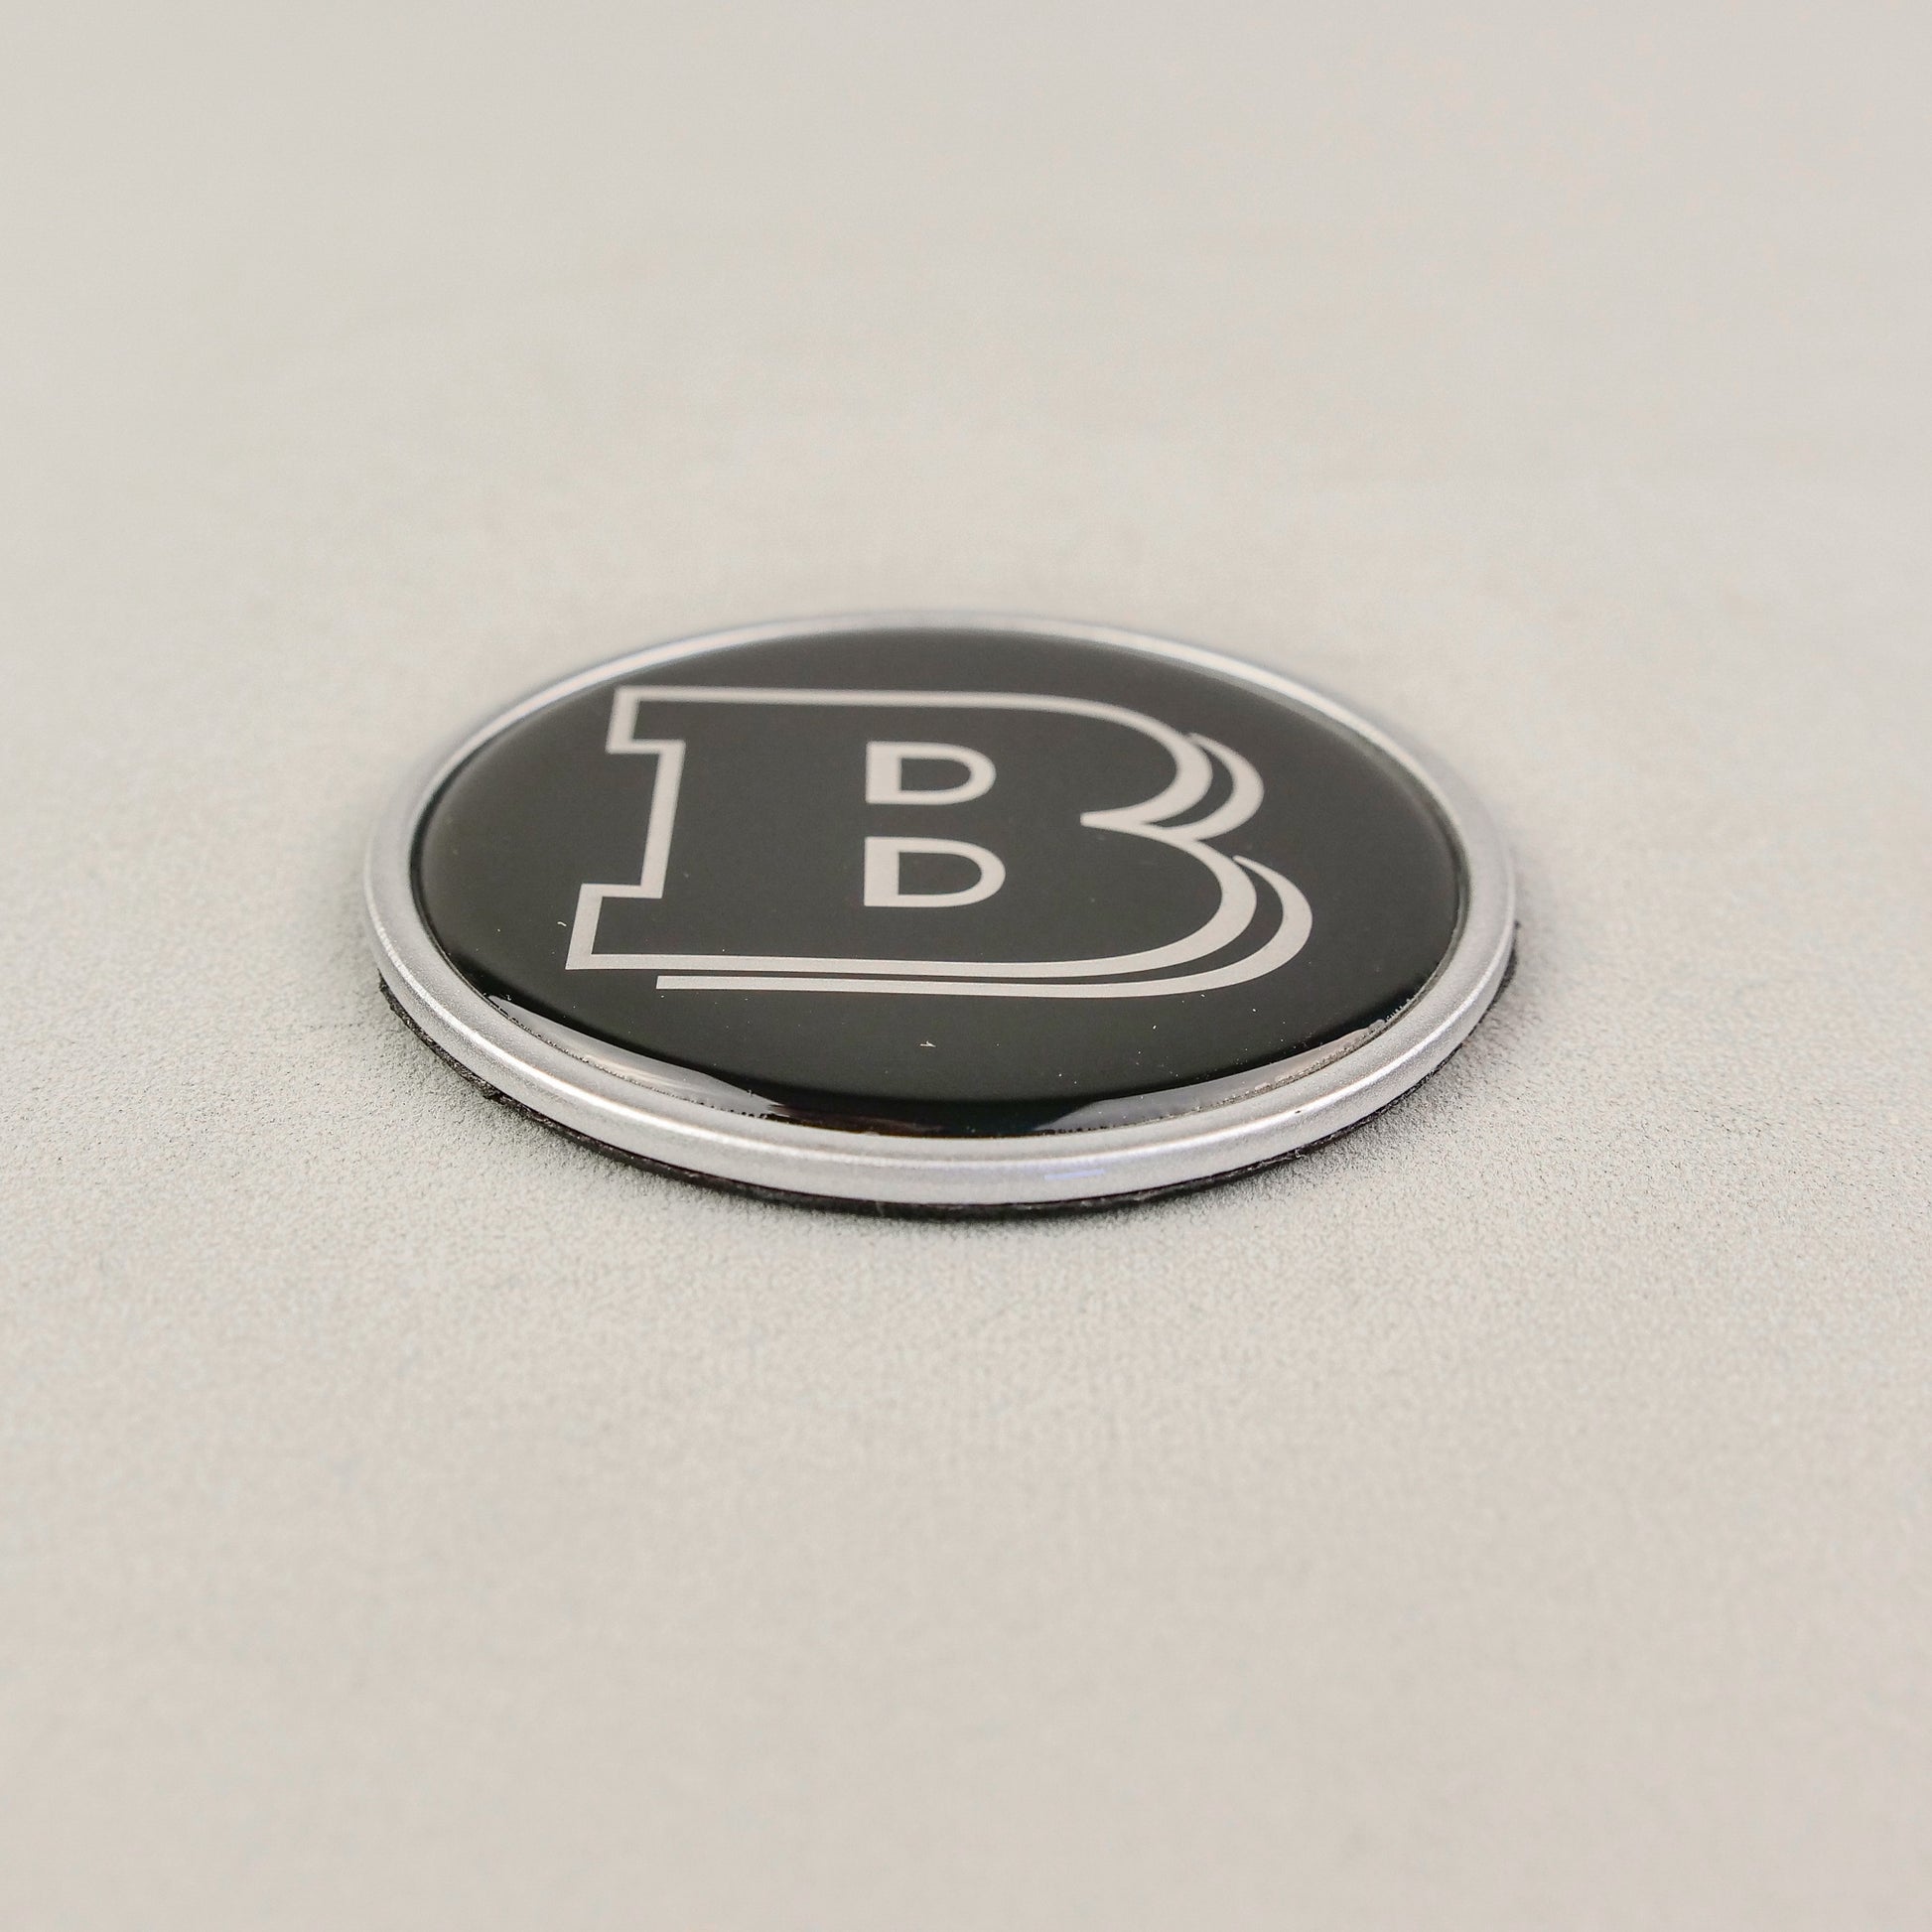 2-component GREY metal carbon Brabus badge logo emblem 55mm for